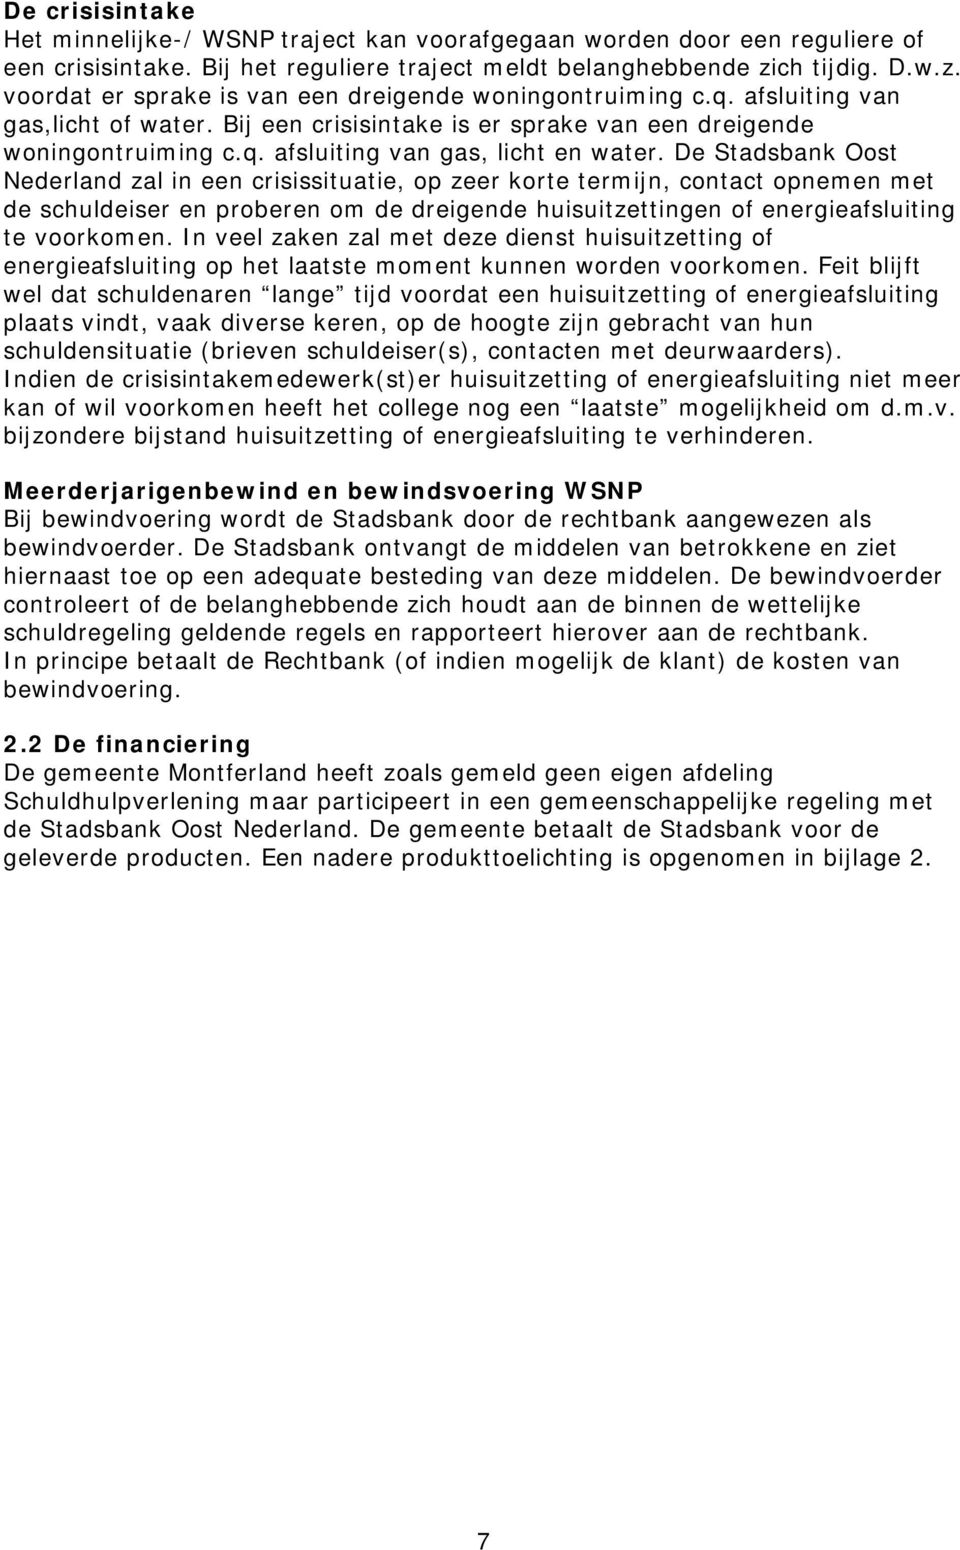 De Stadsbank Oost Nederland zal in een crisissituatie, op zeer korte termijn, contact opnemen met de schuldeiser en proberen om de dreigende huisuitzettingen of energieafsluiting te voorkomen.